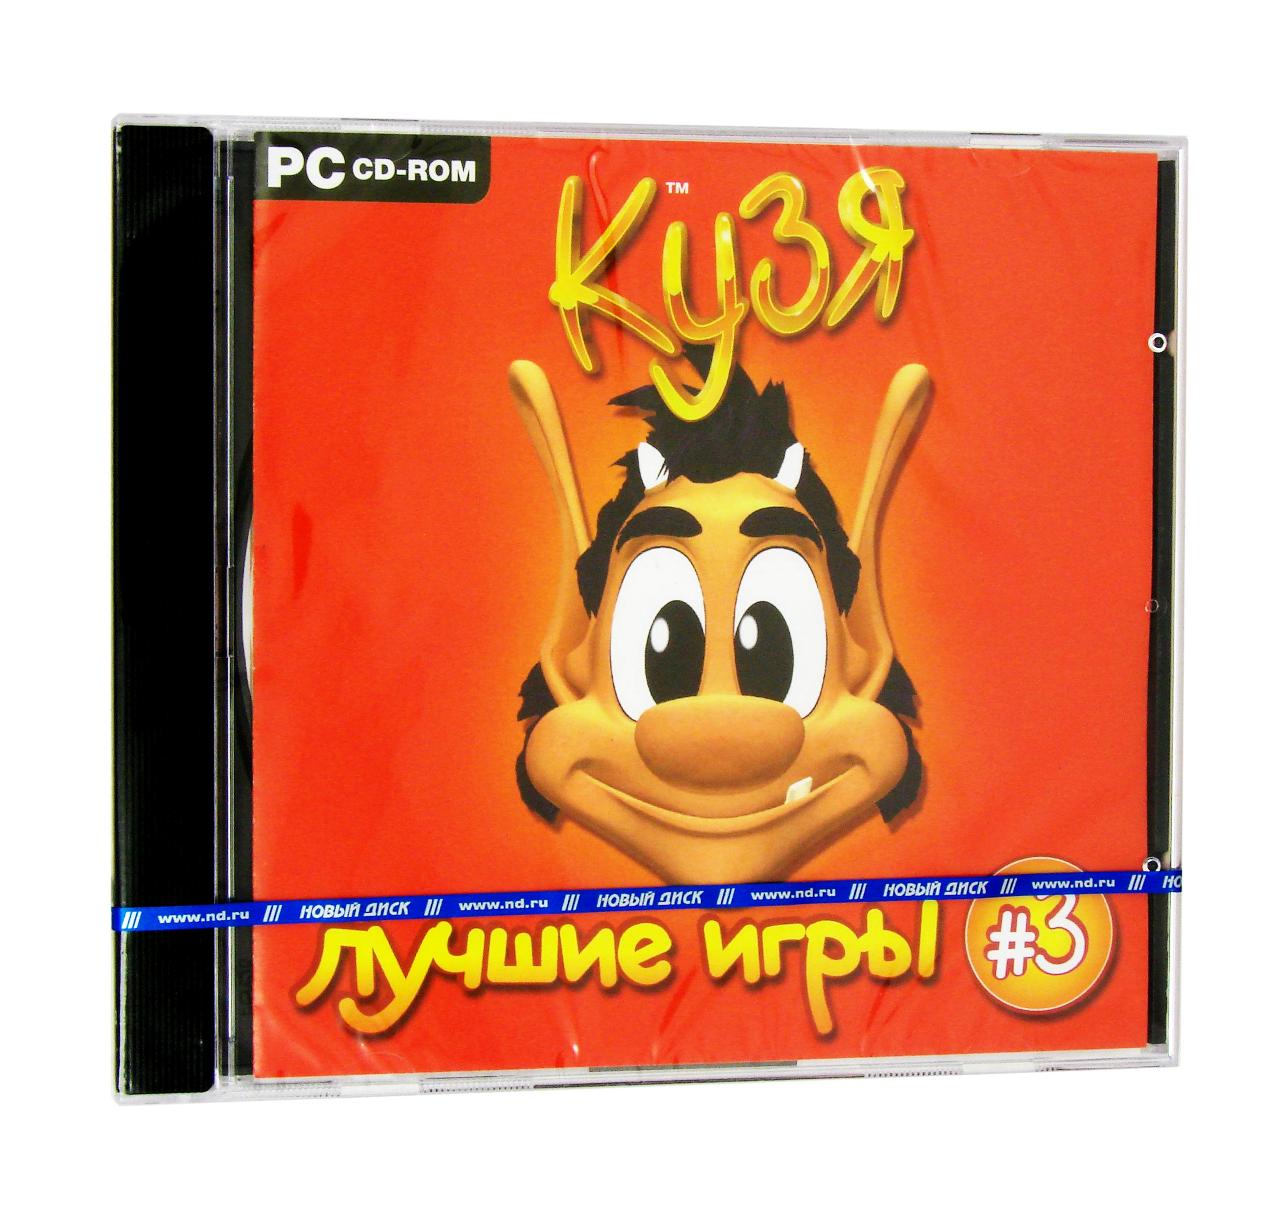 Компьютерный компакт-диск Кузя 3 (ПК), фирма "Новый диск", 1CD